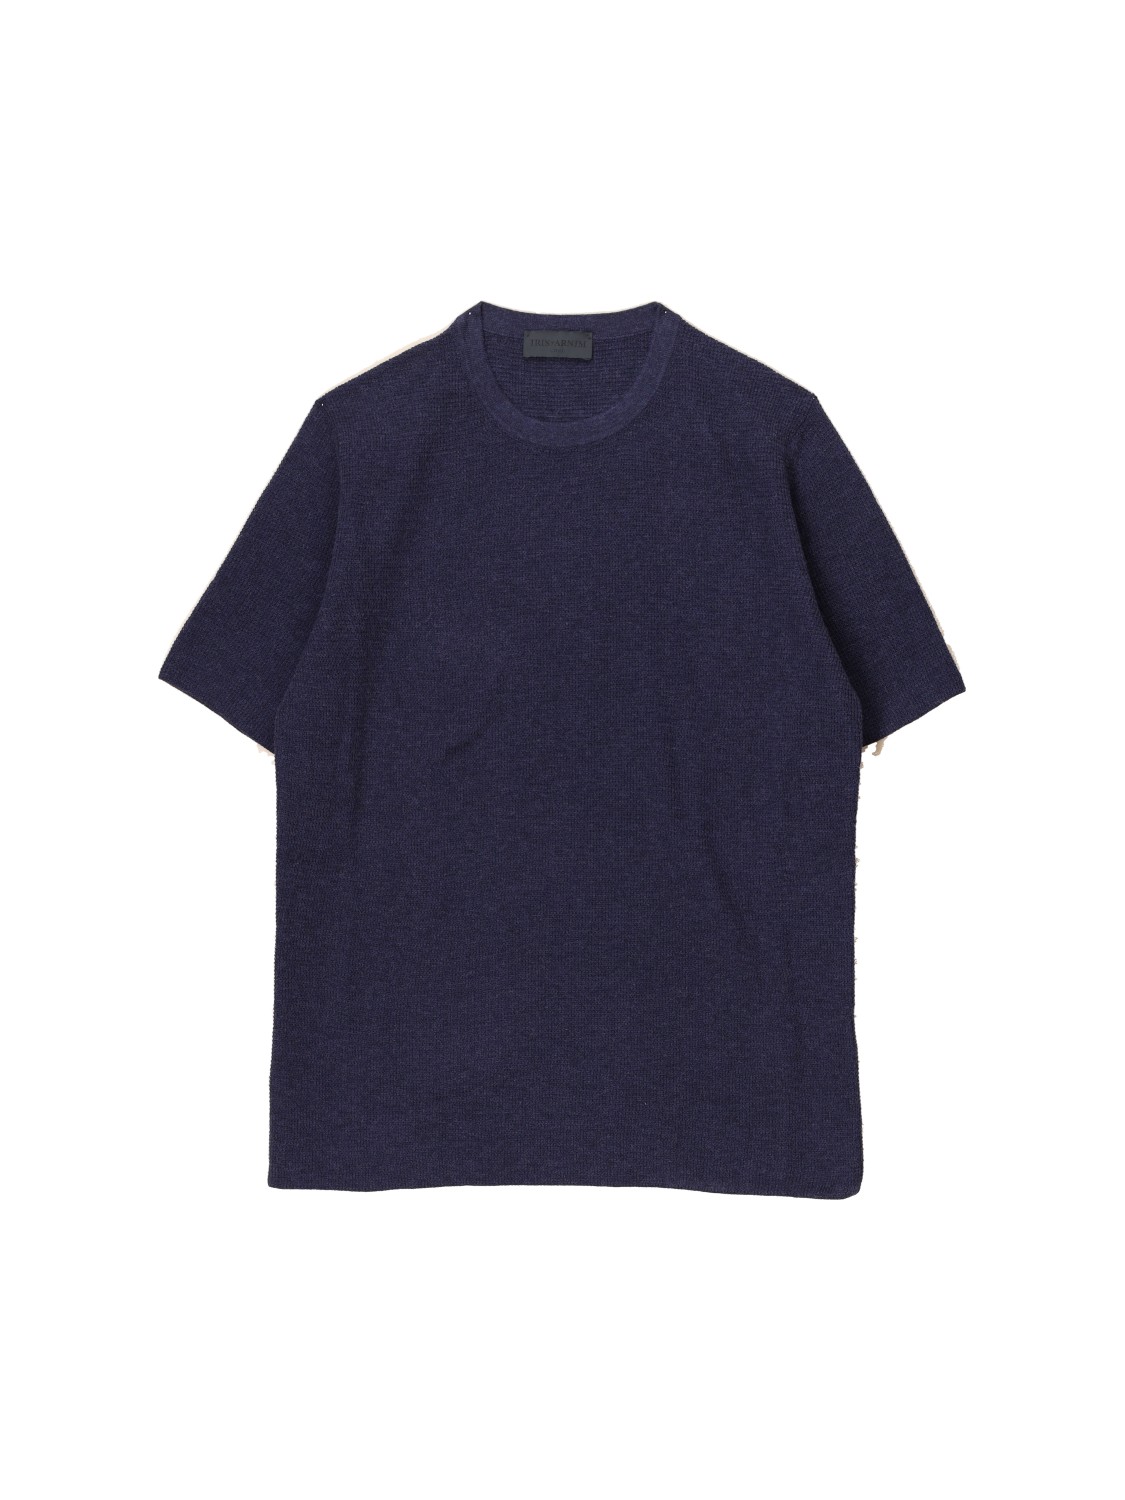 Iris von Arnim Pino – knitted cotton shirt  marine L